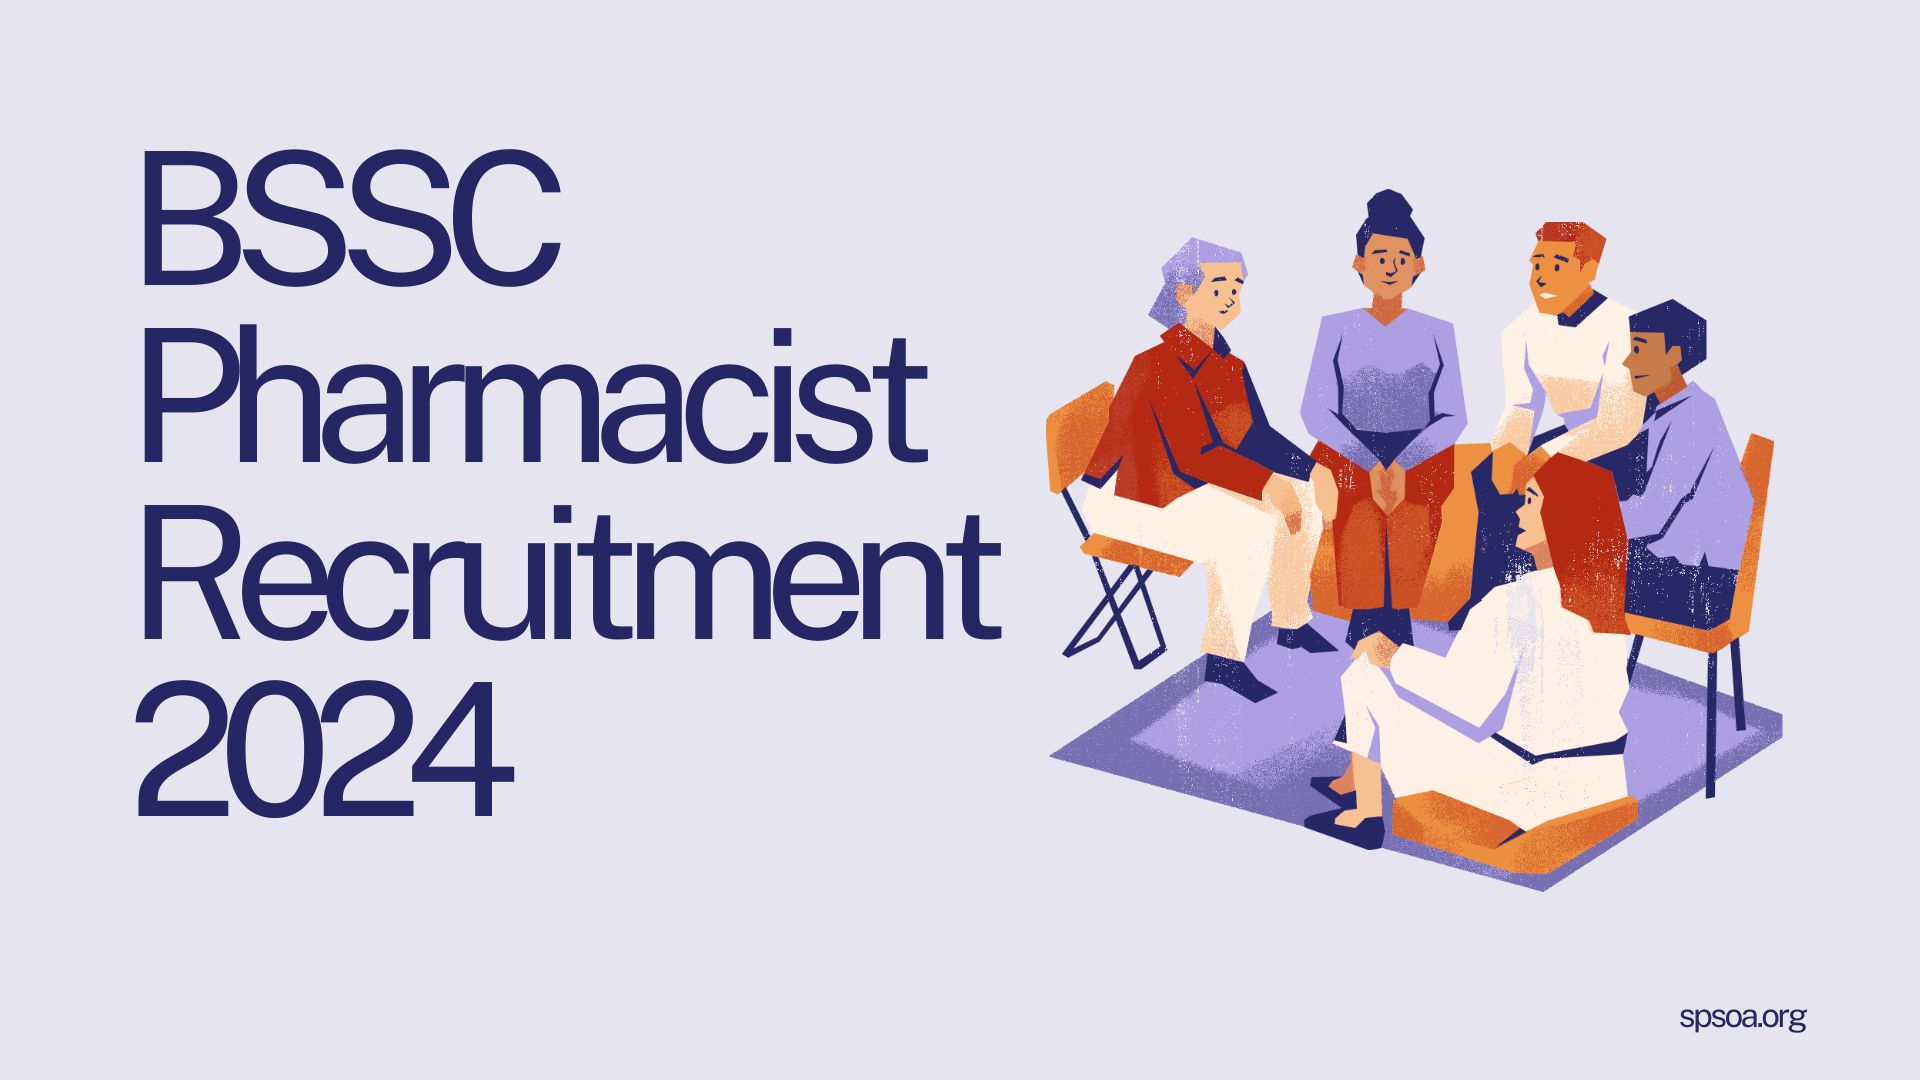 BSSC Pharmacist Recruitment 2024